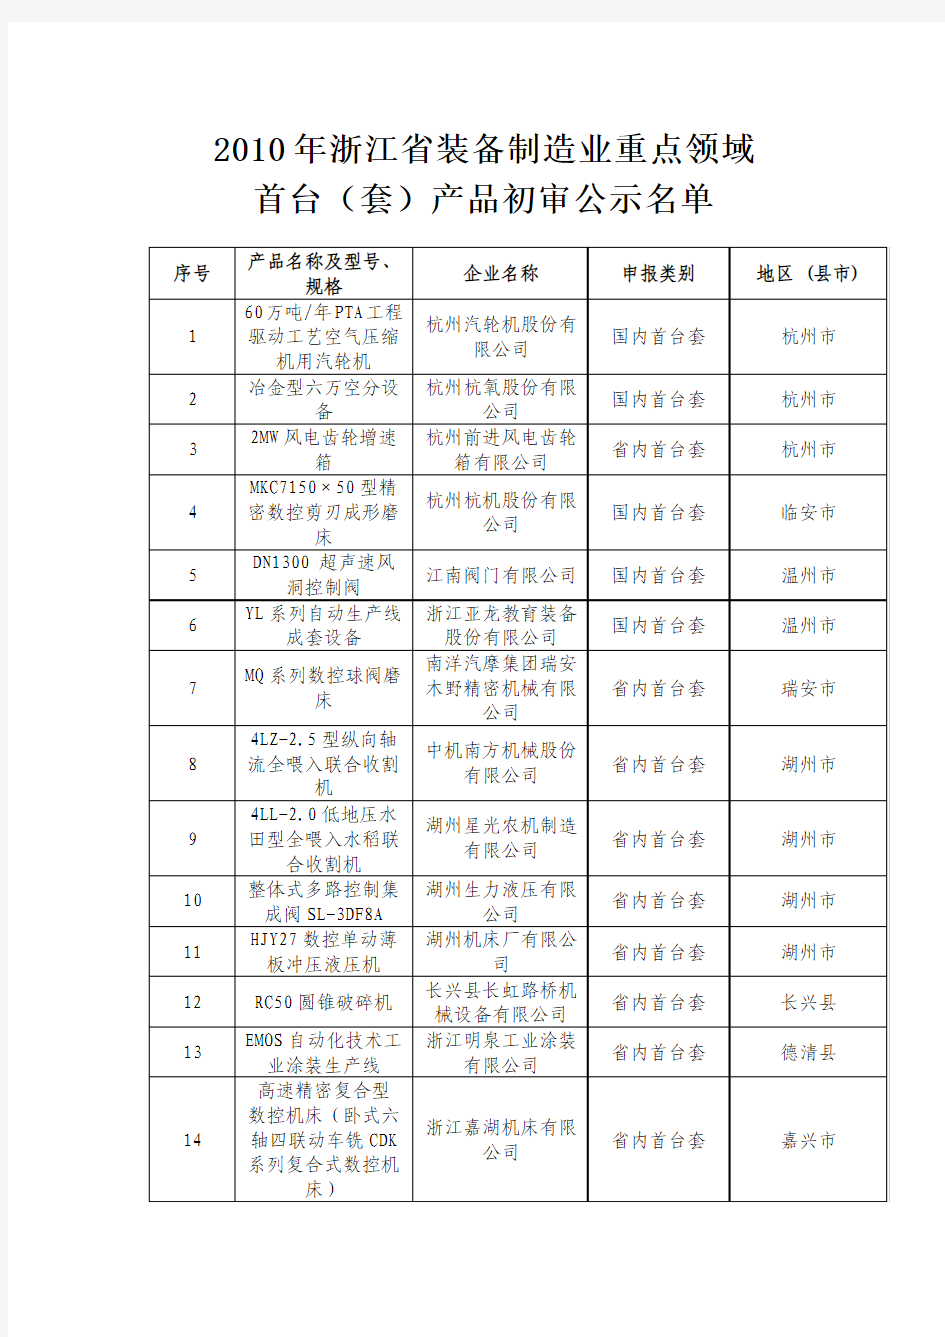 2010年浙江省装备制造业首台(套)产品初审公示名单